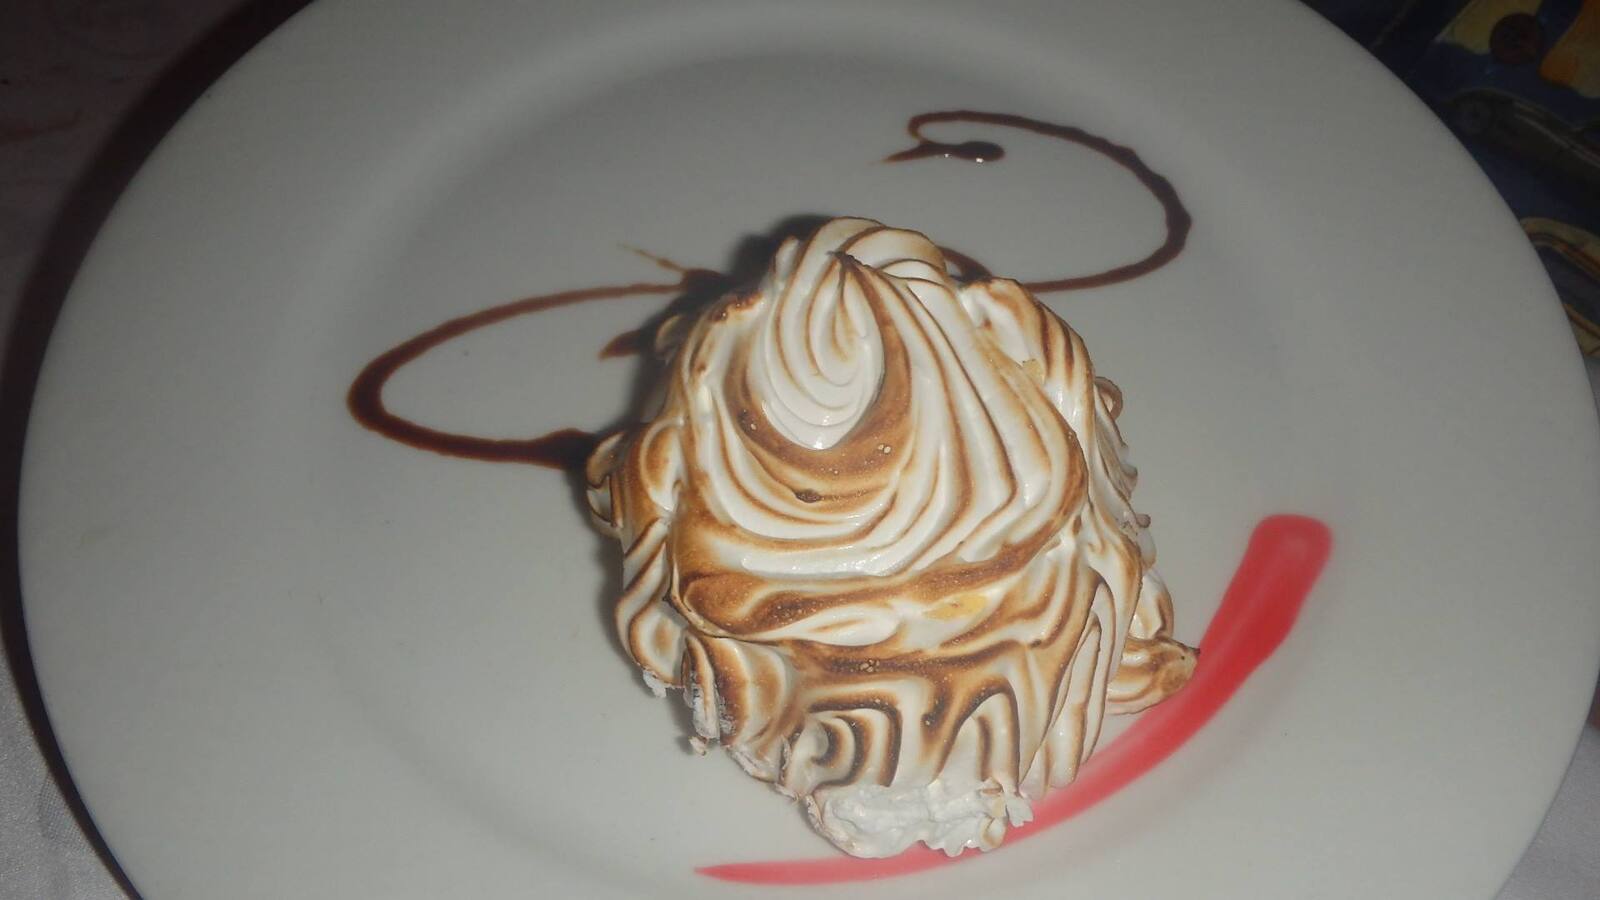 Dave’s favorite dessert..Baked Alaska… Portofino by Lynn Shallenberger